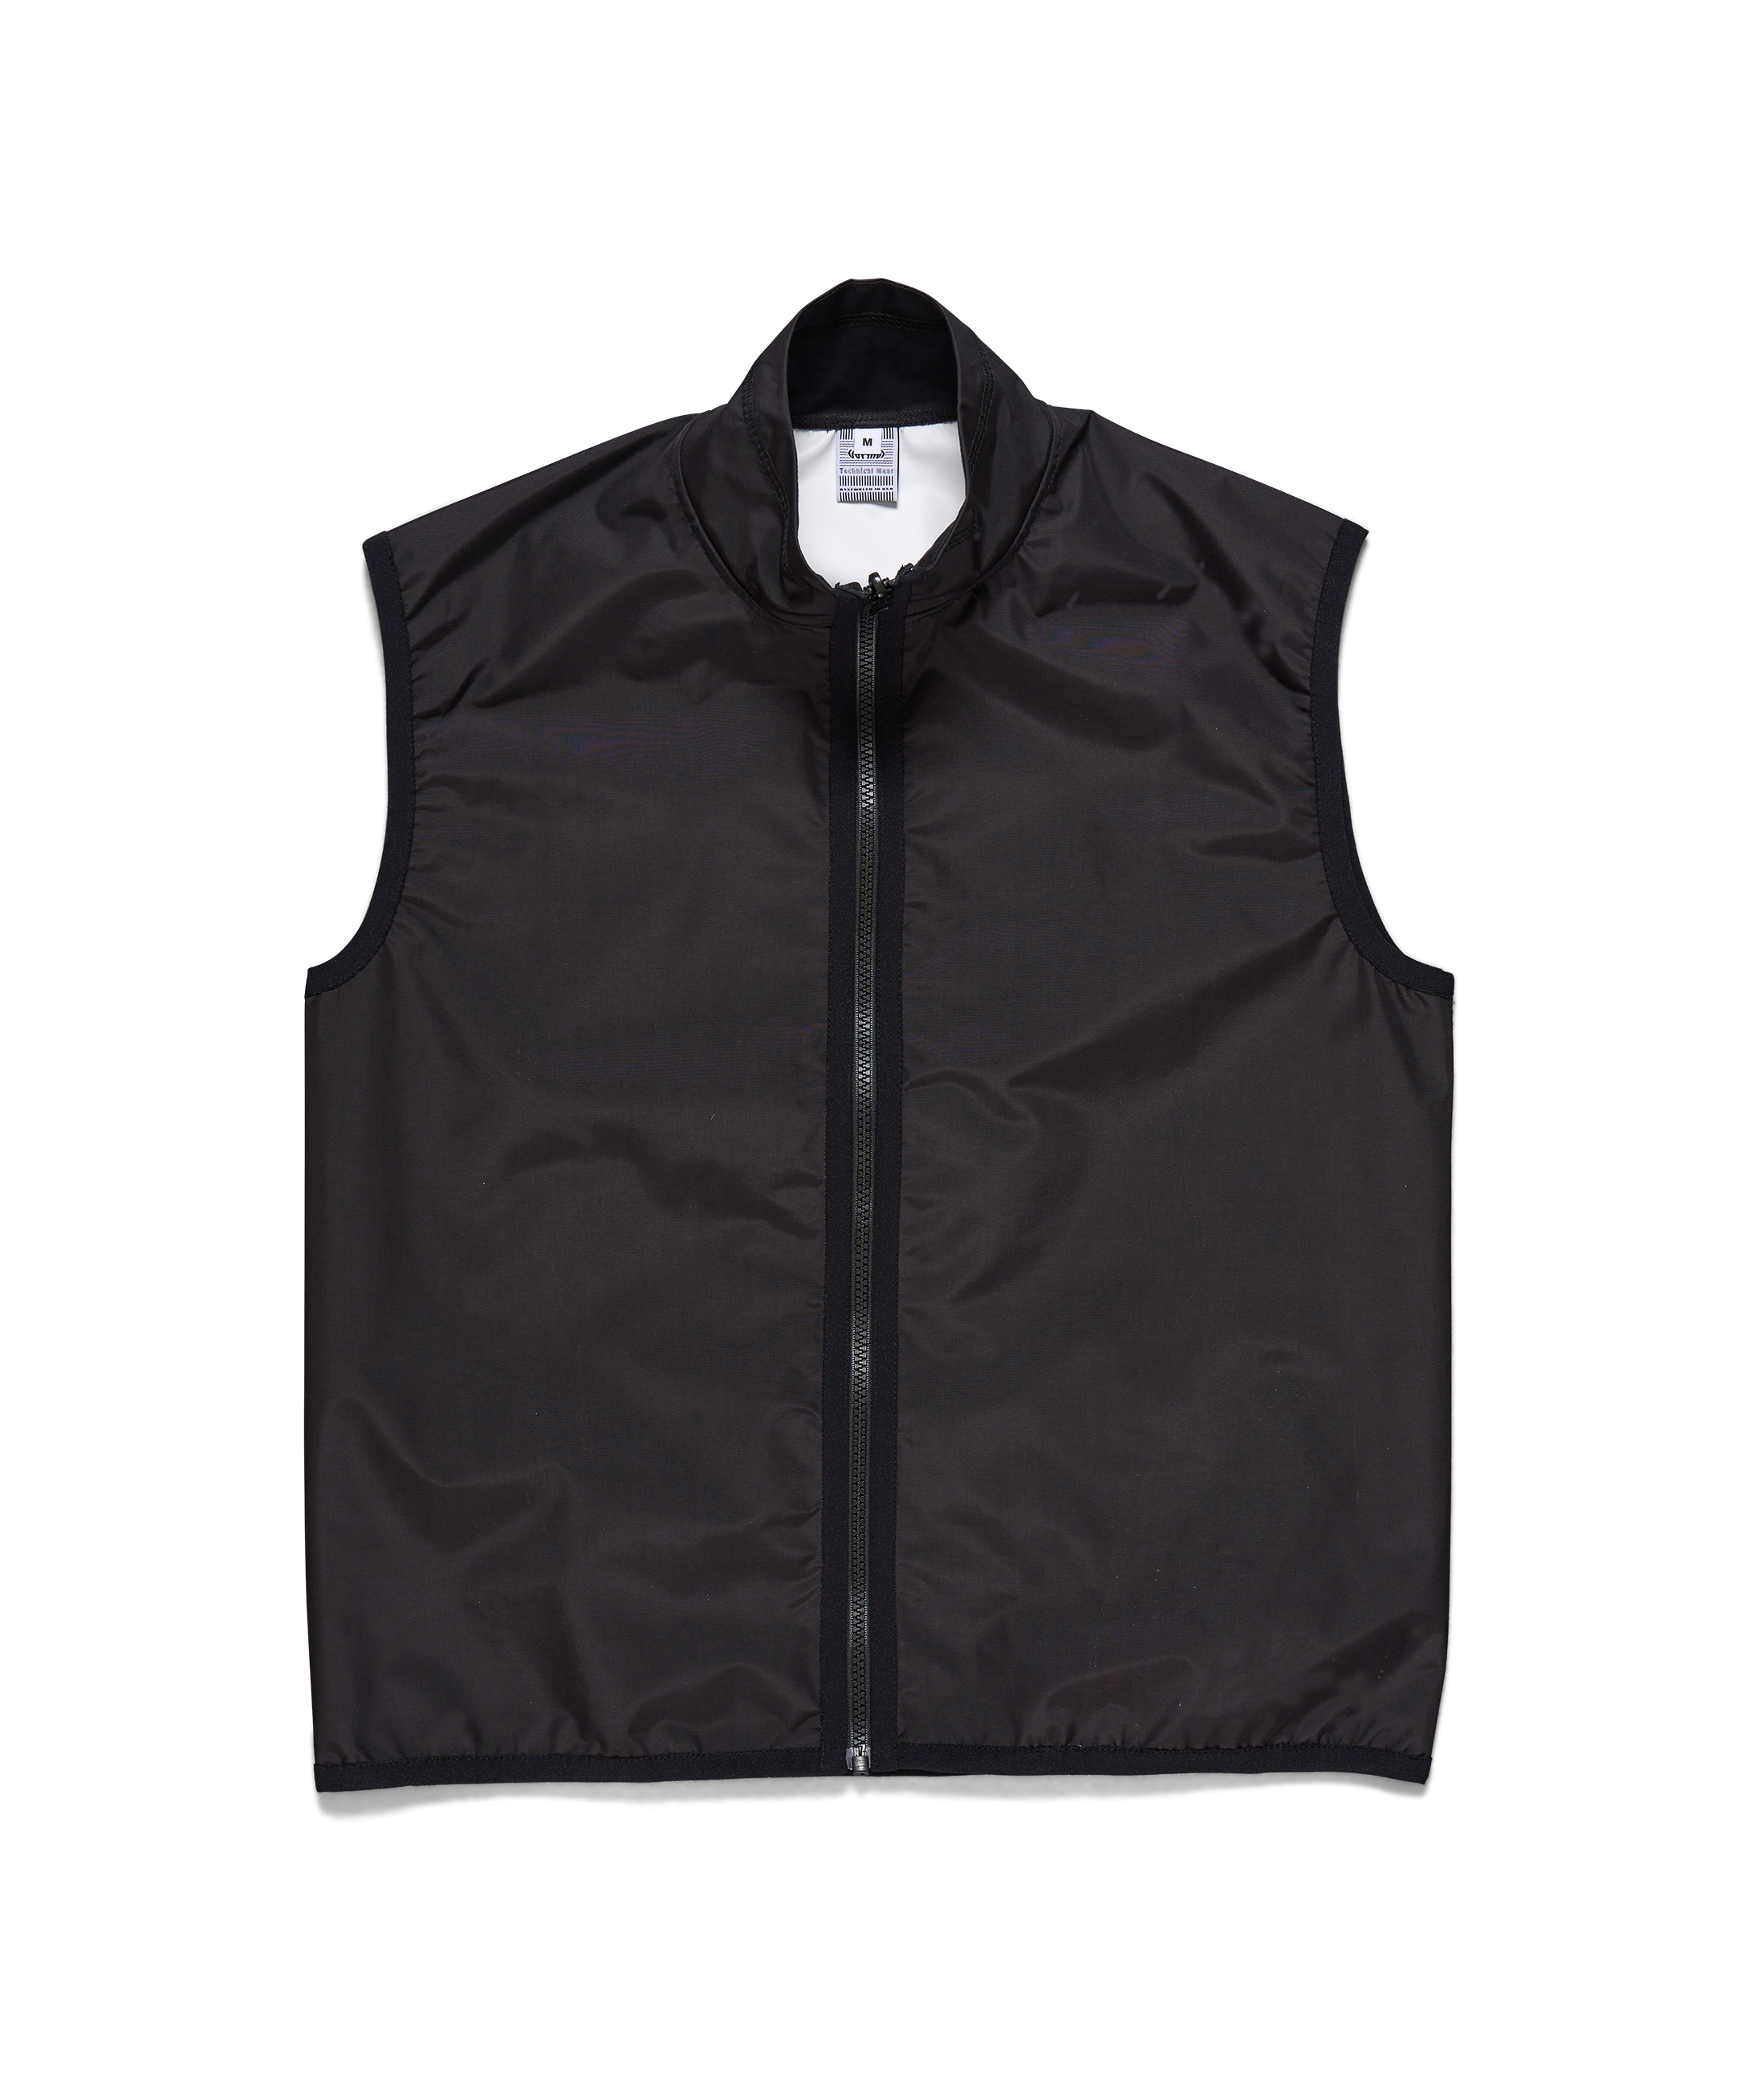 Black Full Zip Nylon Vest